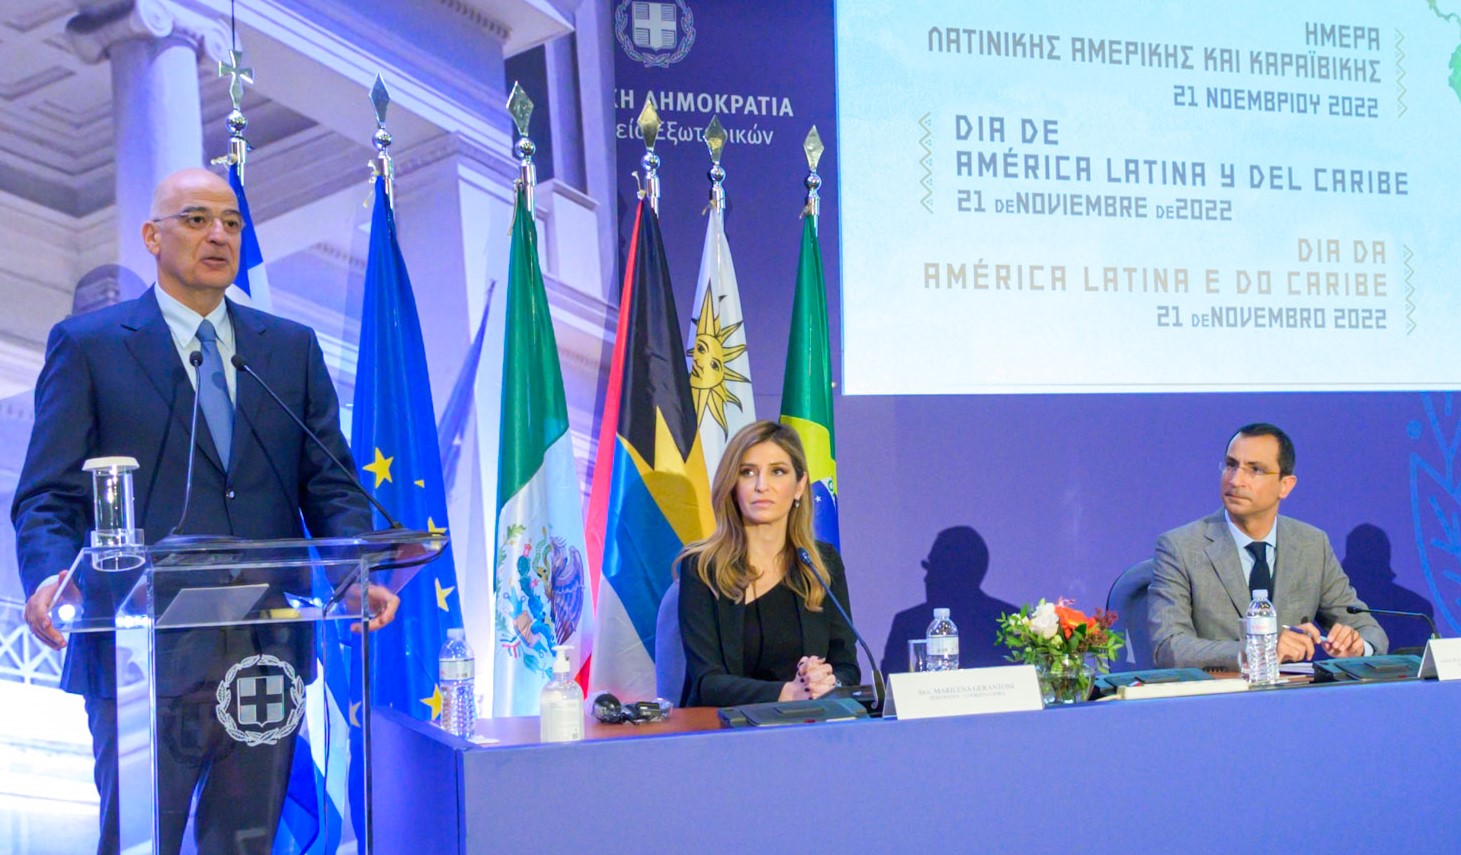 «Ημέρα Λατινικής Αμερικής και Καραϊβικής» με πρωτοβουλία Πιπίνη υπό την αιγίδα του Υπουργείου Εξωτερικών